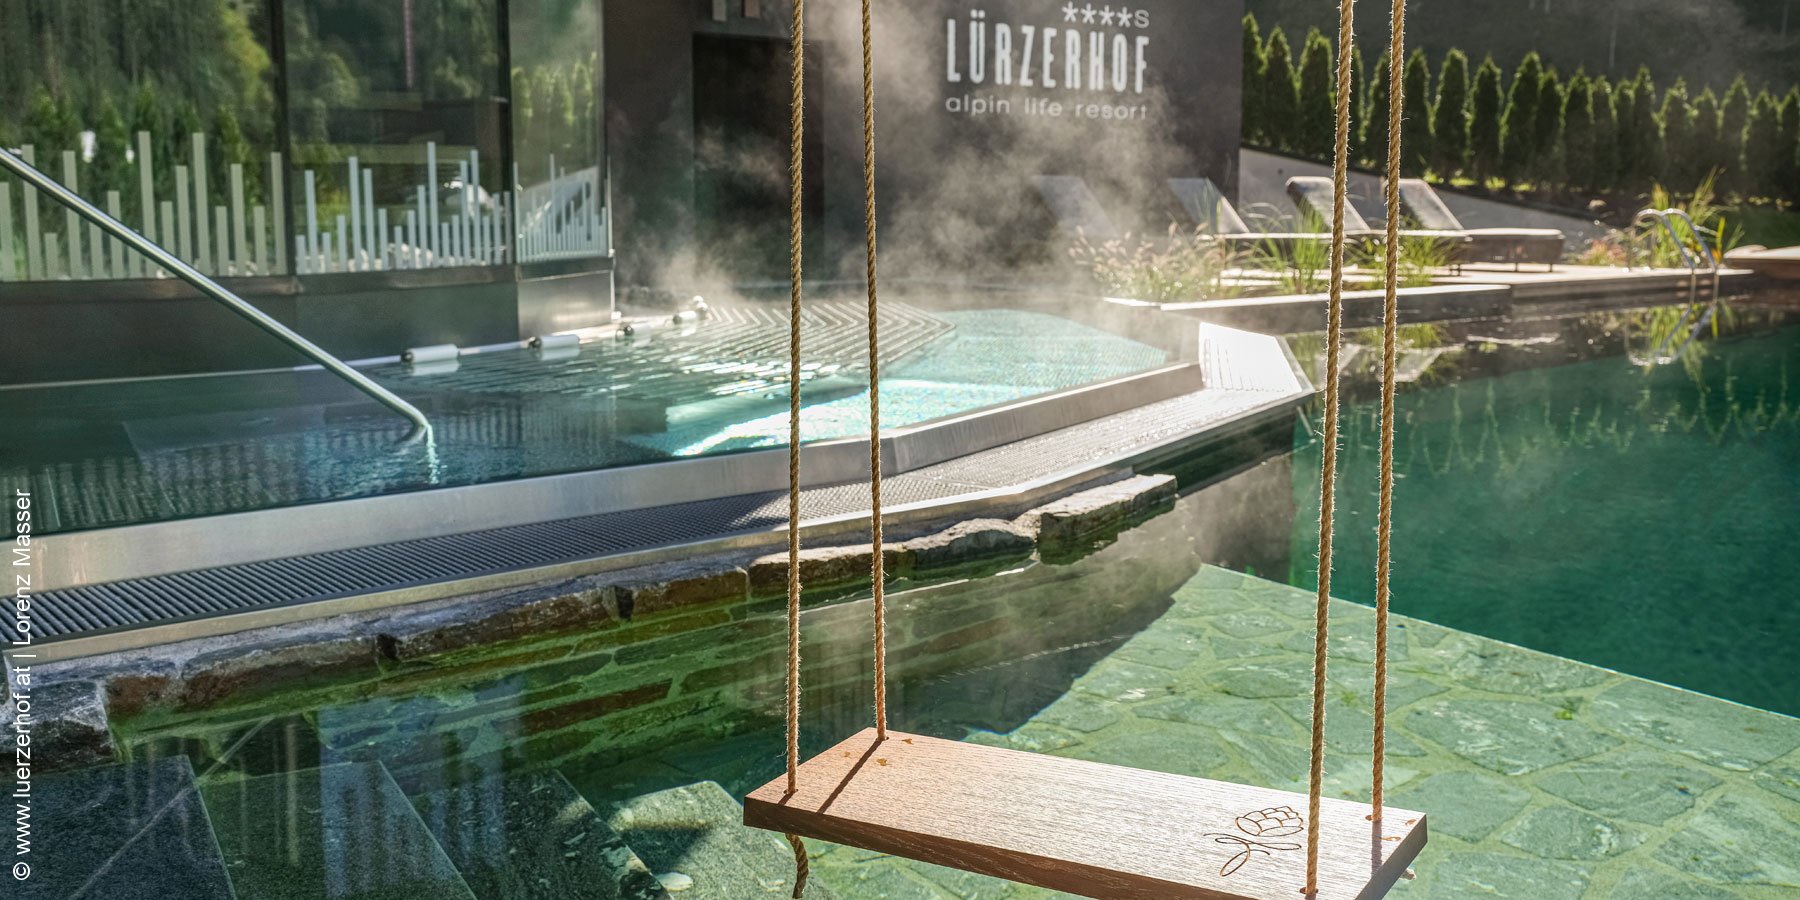 Alpin Life Resort Luerzerhof | Untertauern | Sauna-Natursee | luxuszeit.com